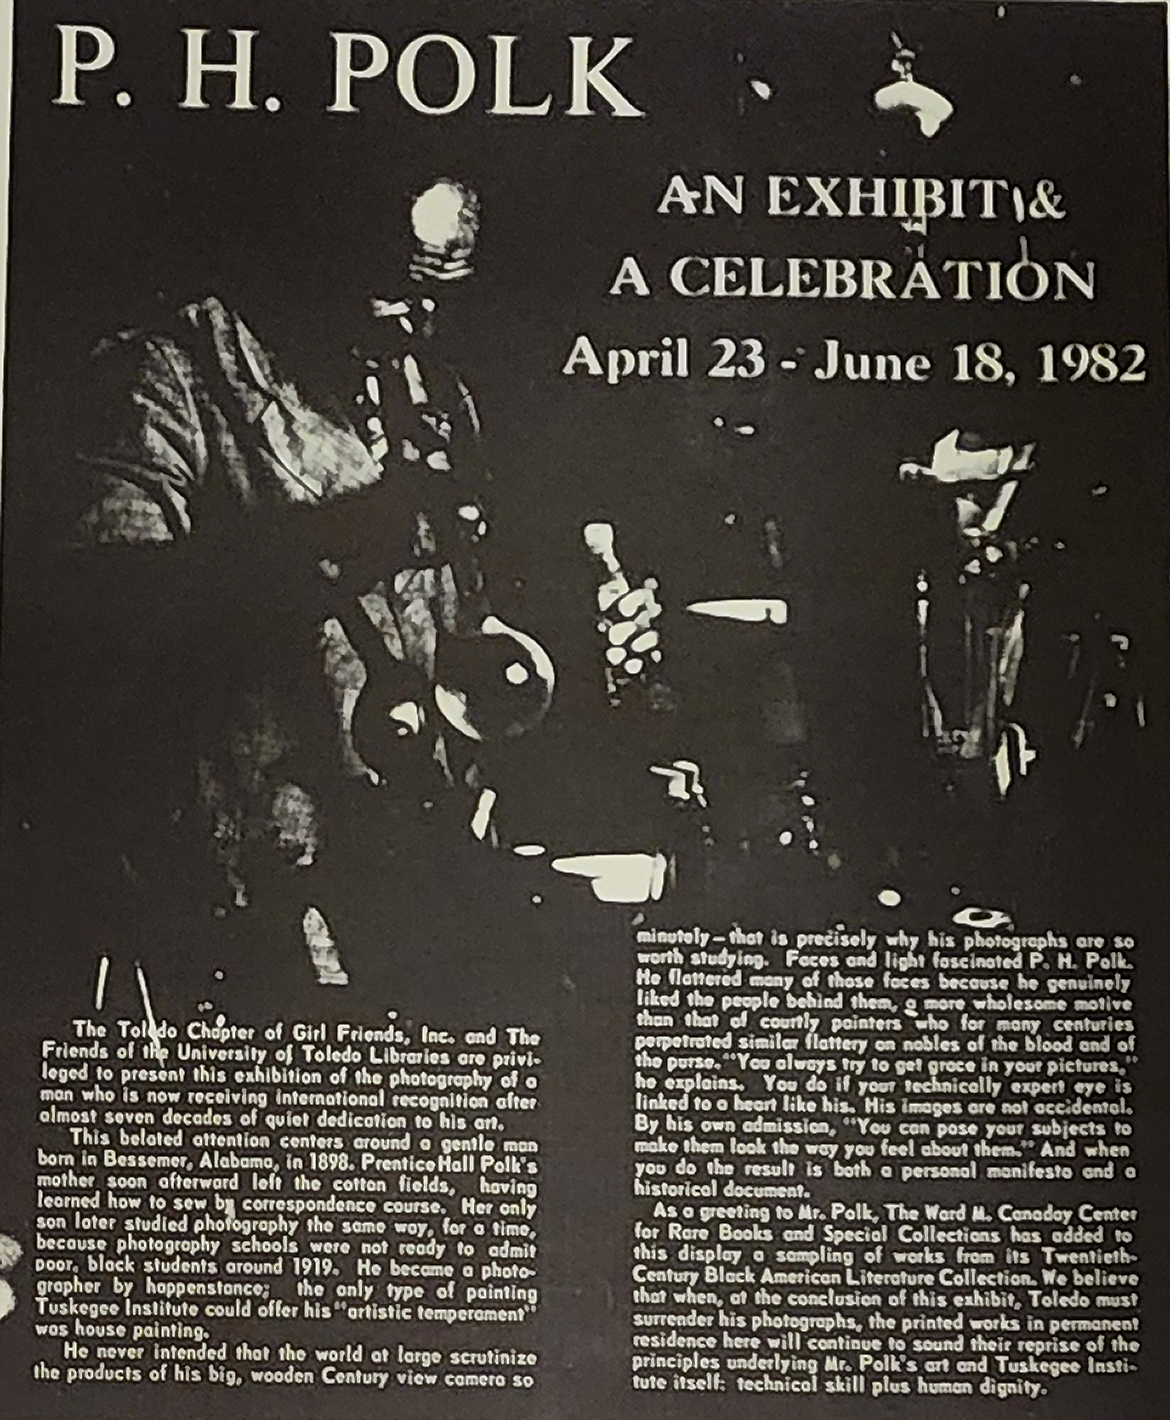 P. H. Polk, An Exhibition & A Celebration, April 23 - June 18, 1982